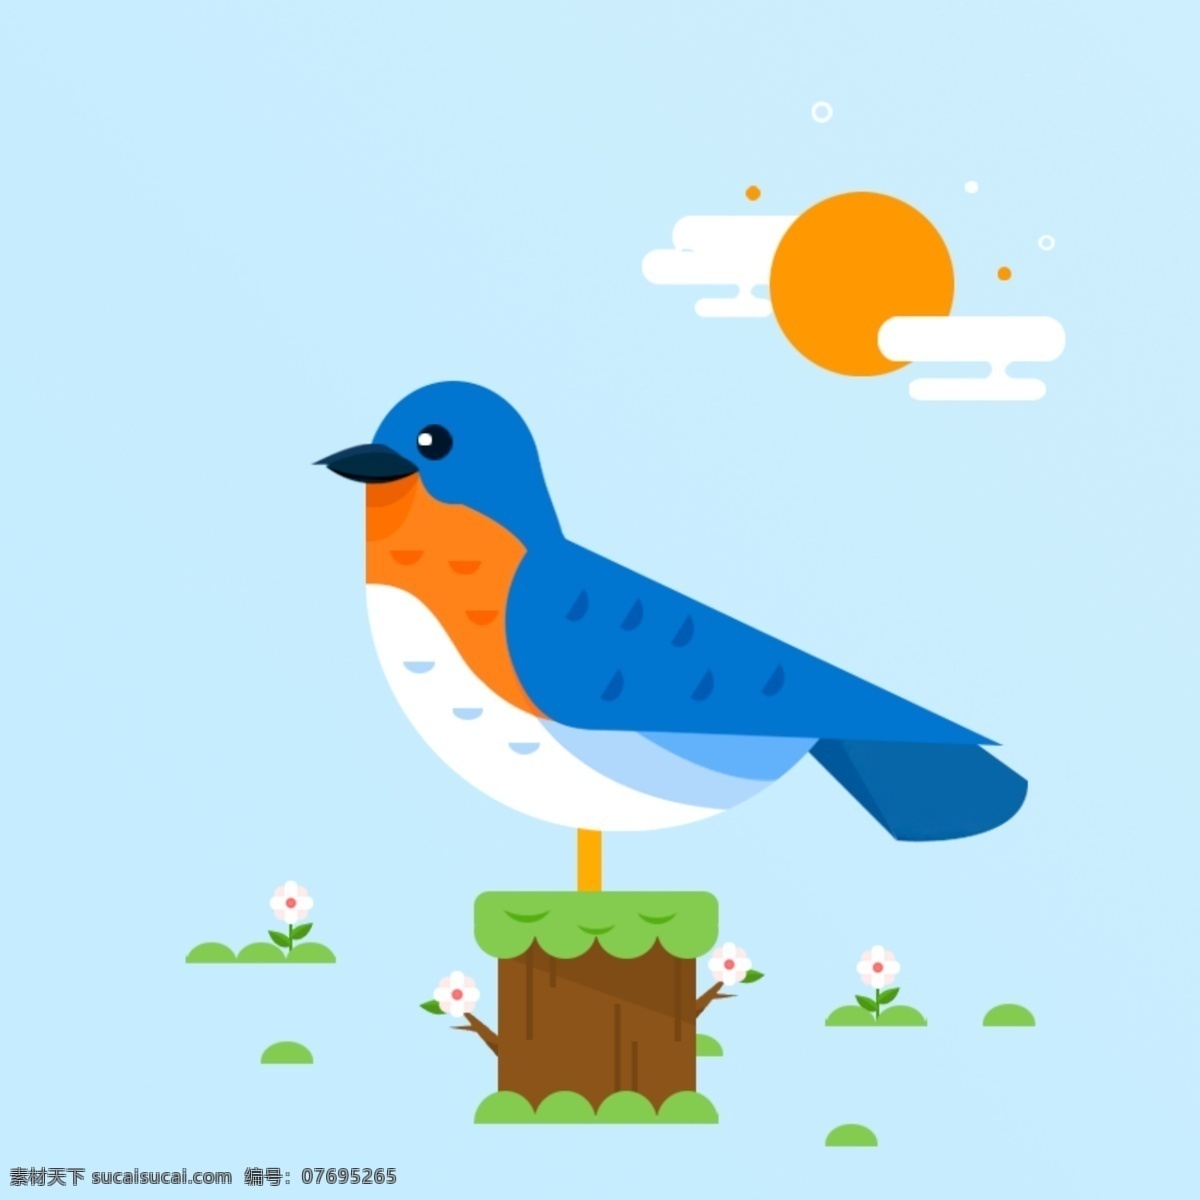 小鸟插画 小鸟 扁平化 卡通 ui 图标 青色 天蓝色